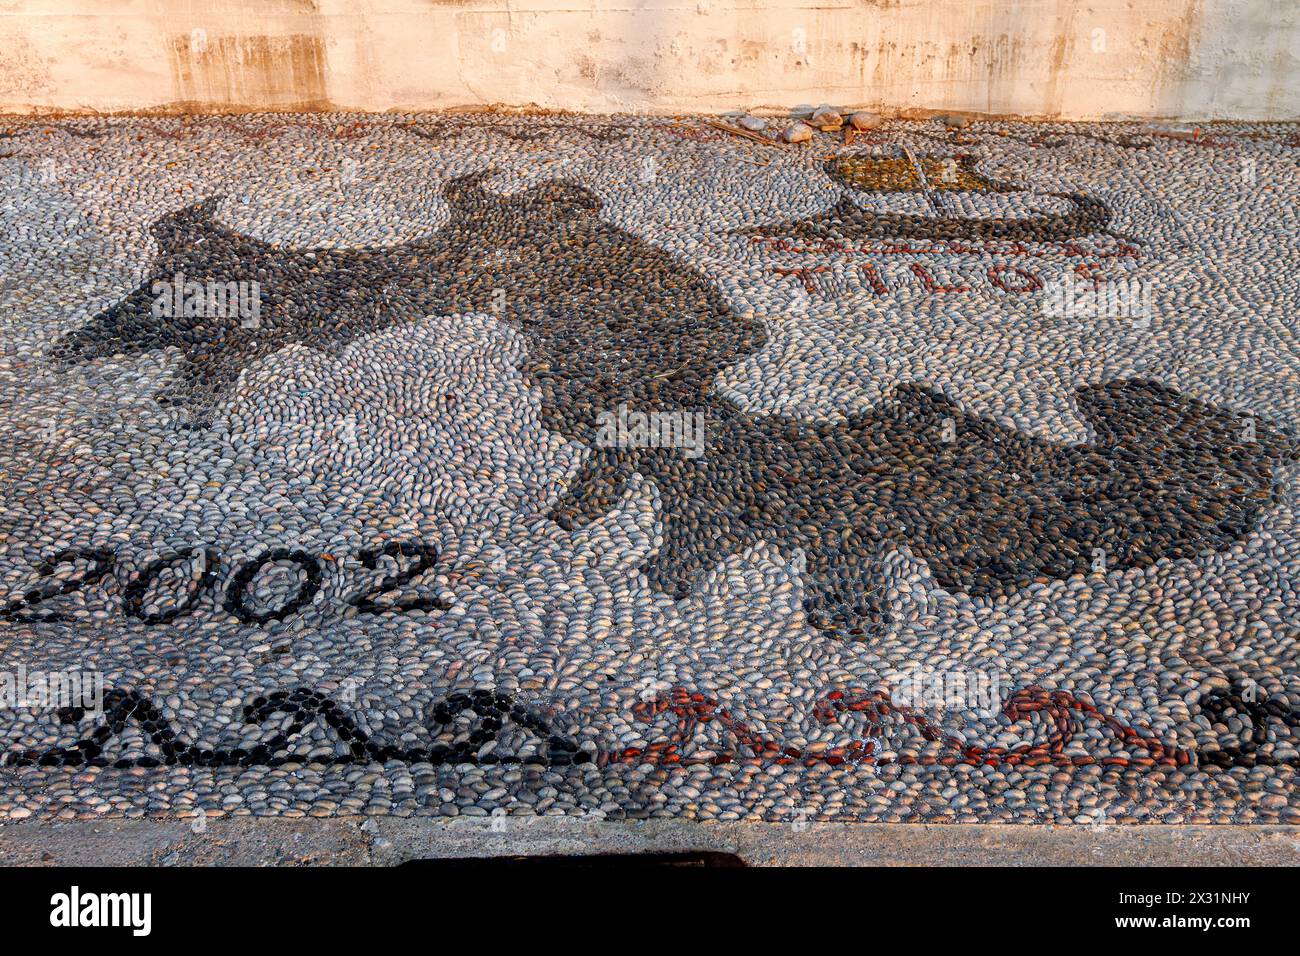 Mosaico di ciottoli con la forma dell'isola di Tilos, data 2002 e un'antica trireme in ciottoli neri, al porto della città di Livadia, Tilos, Grecia, Europa Foto Stock